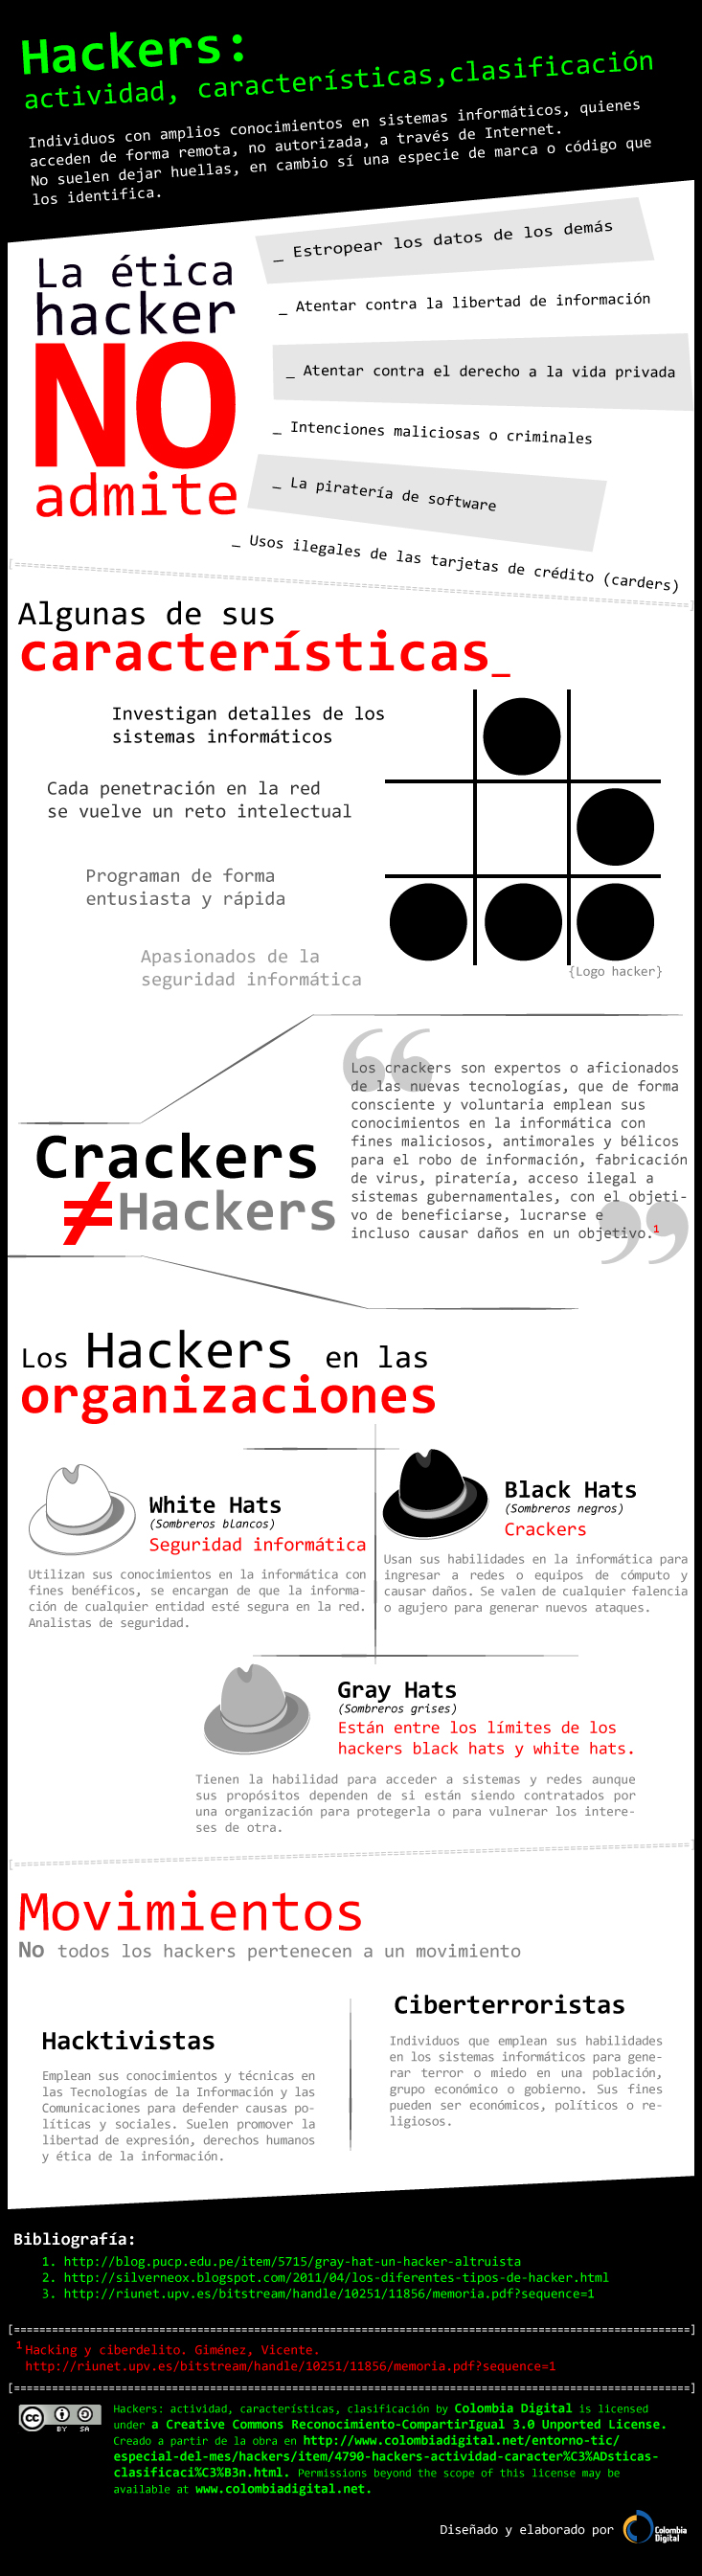 Infografía sobre Hackers